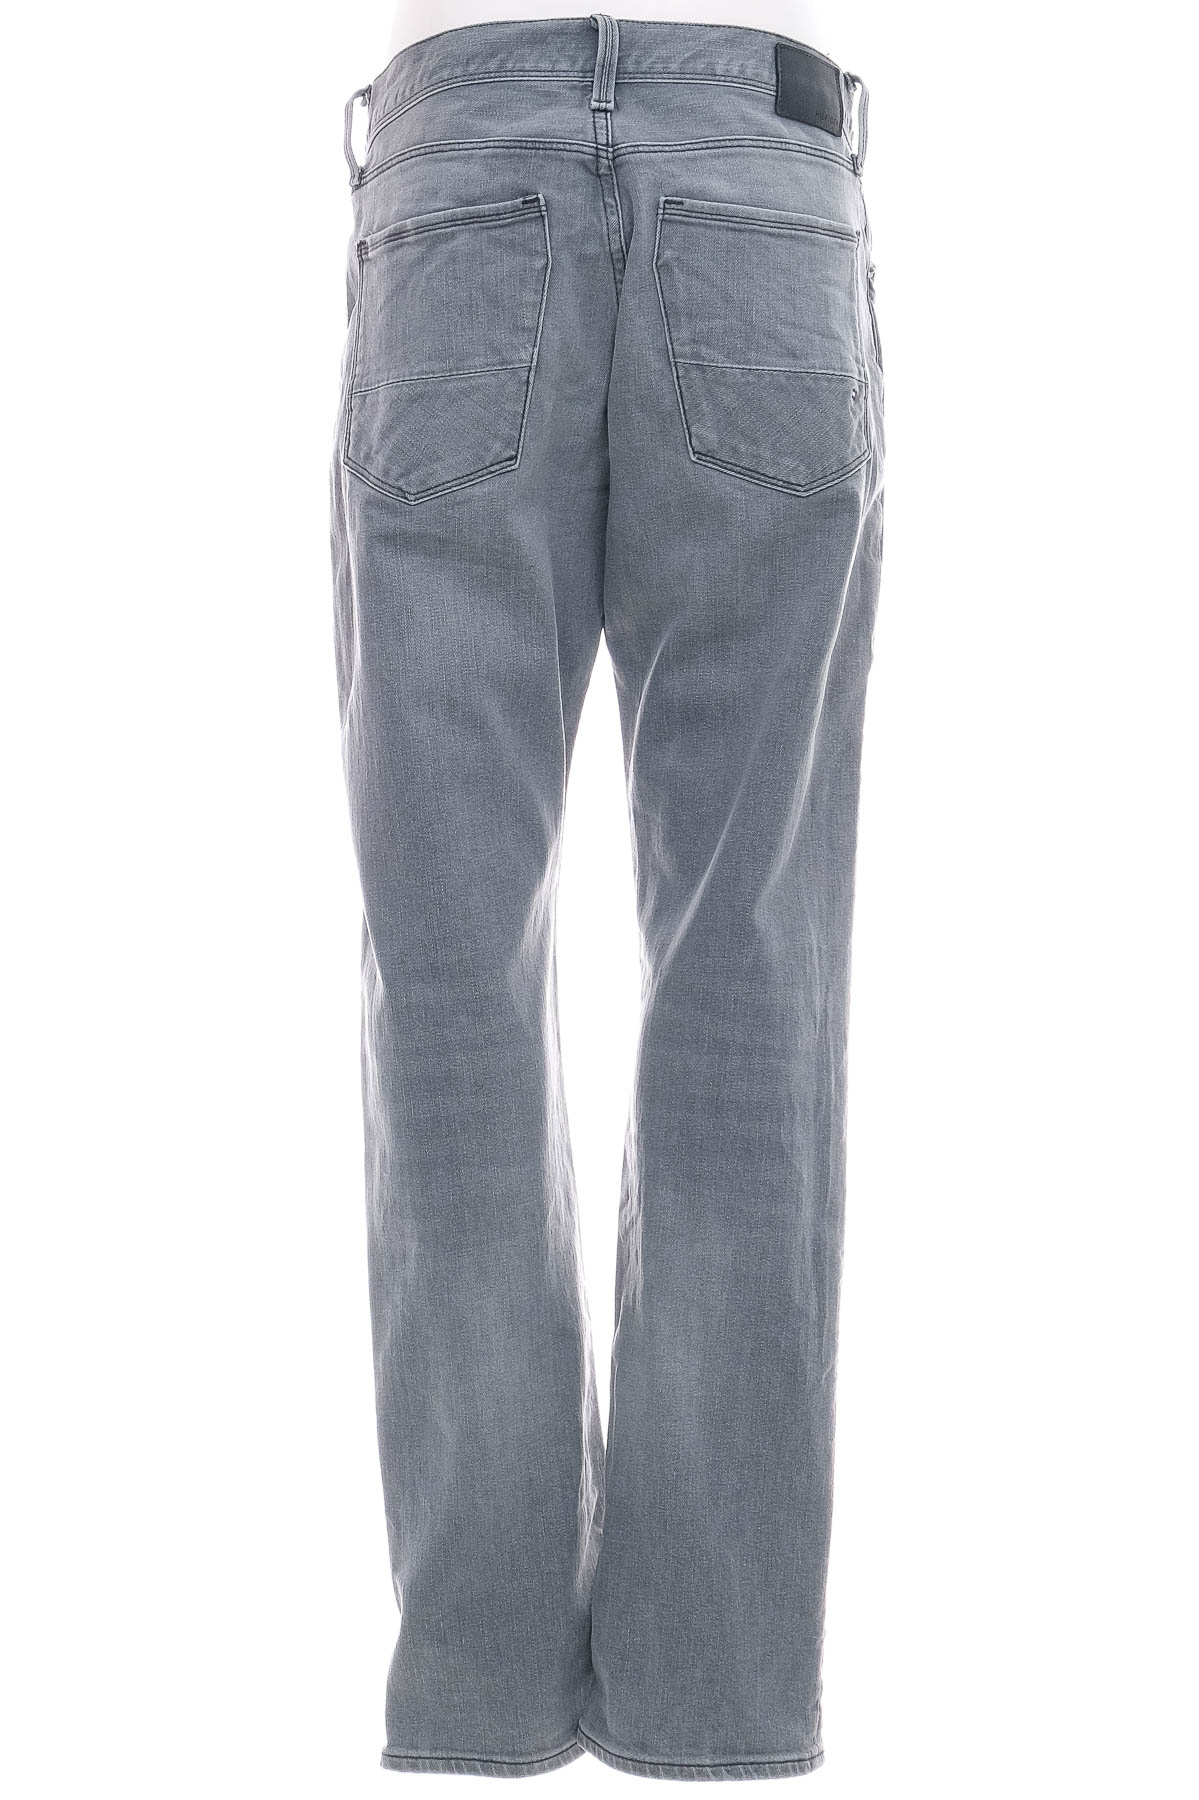 Men's jeans - TOMMY HILFIGER - 1